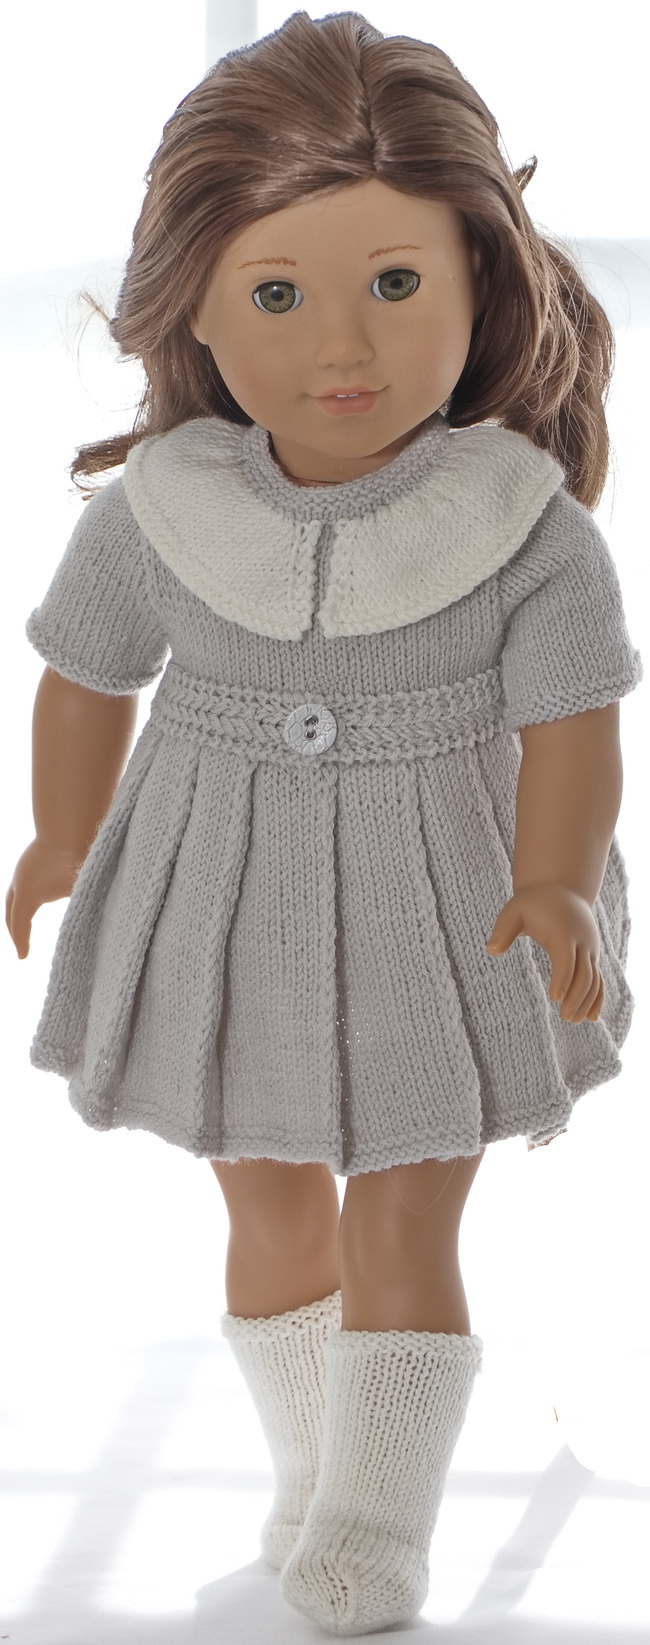 0241d-knitting-patterns-for-ag-dolls-06.jpg